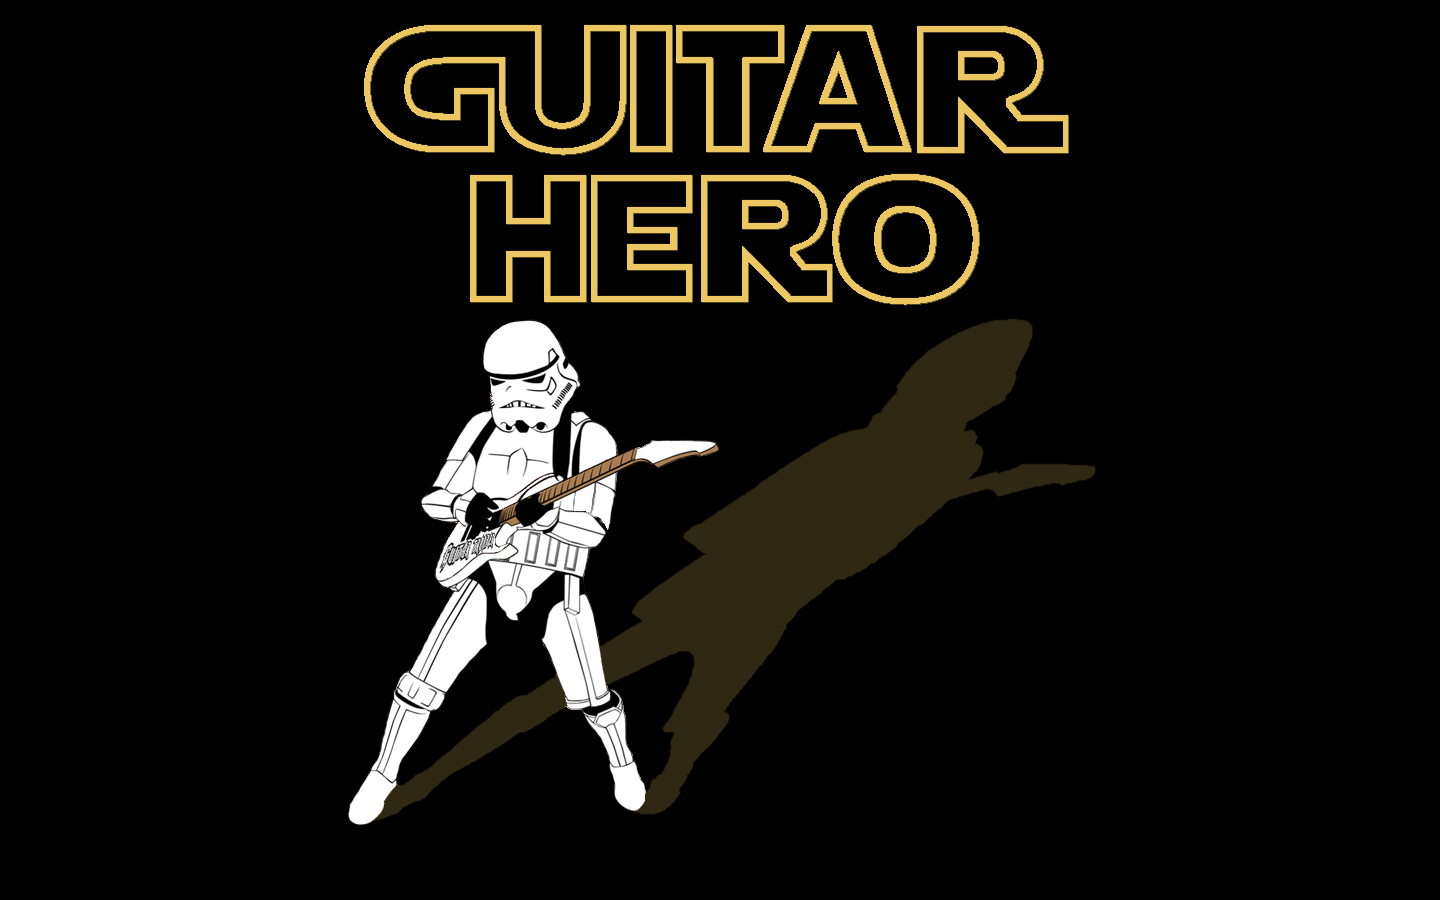 Скачать обои Guitar Hero на телефон бесплатно